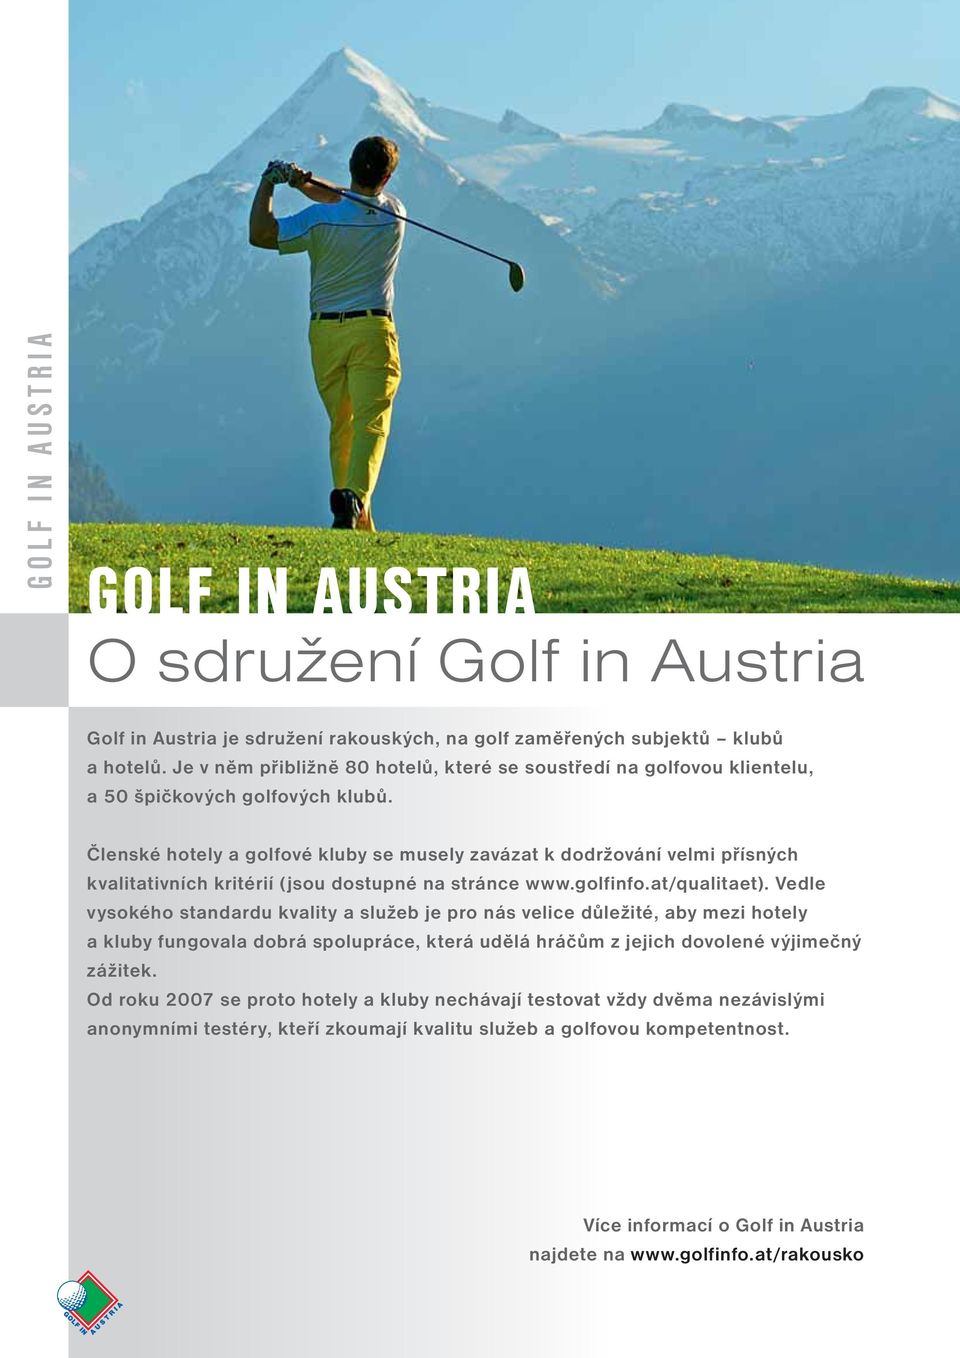 Členské hotely a golfové kluby se musely zavázat k dodržování velmi přísných kvalitativních kritérií (jsou dostupné na stránce www.golfinfo.at/qualitaet).